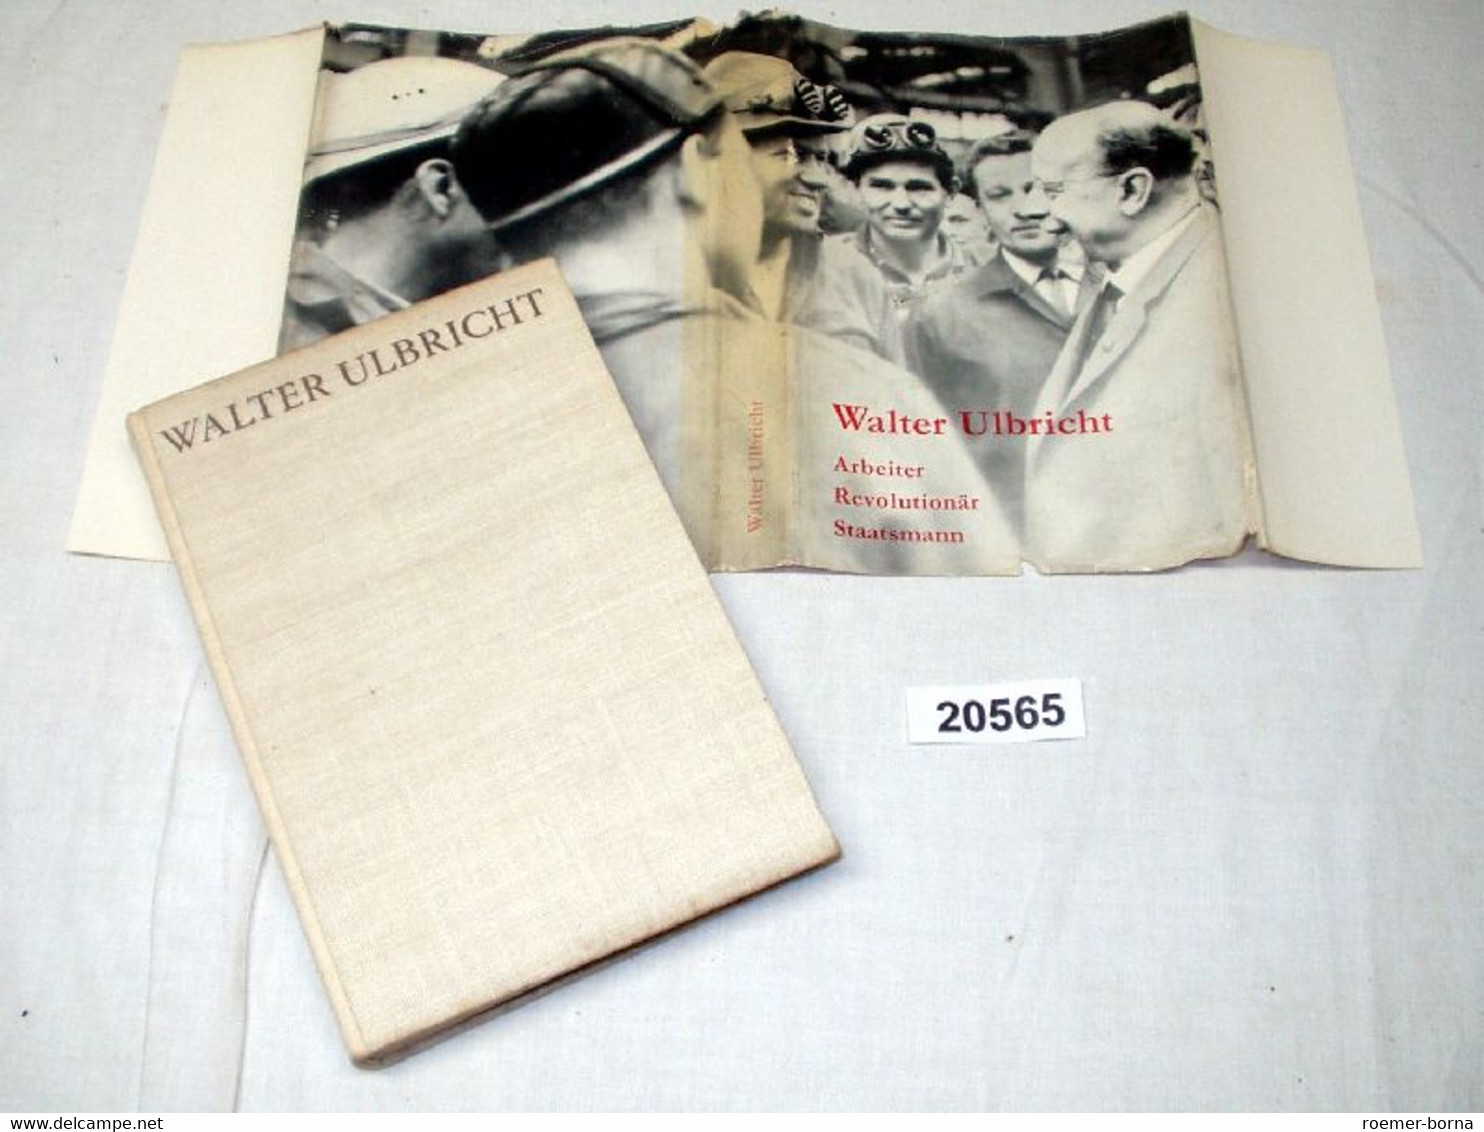 Walter Ulbricht - Arbeiter Revolutionär Staatsmann - Biographien & Memoiren